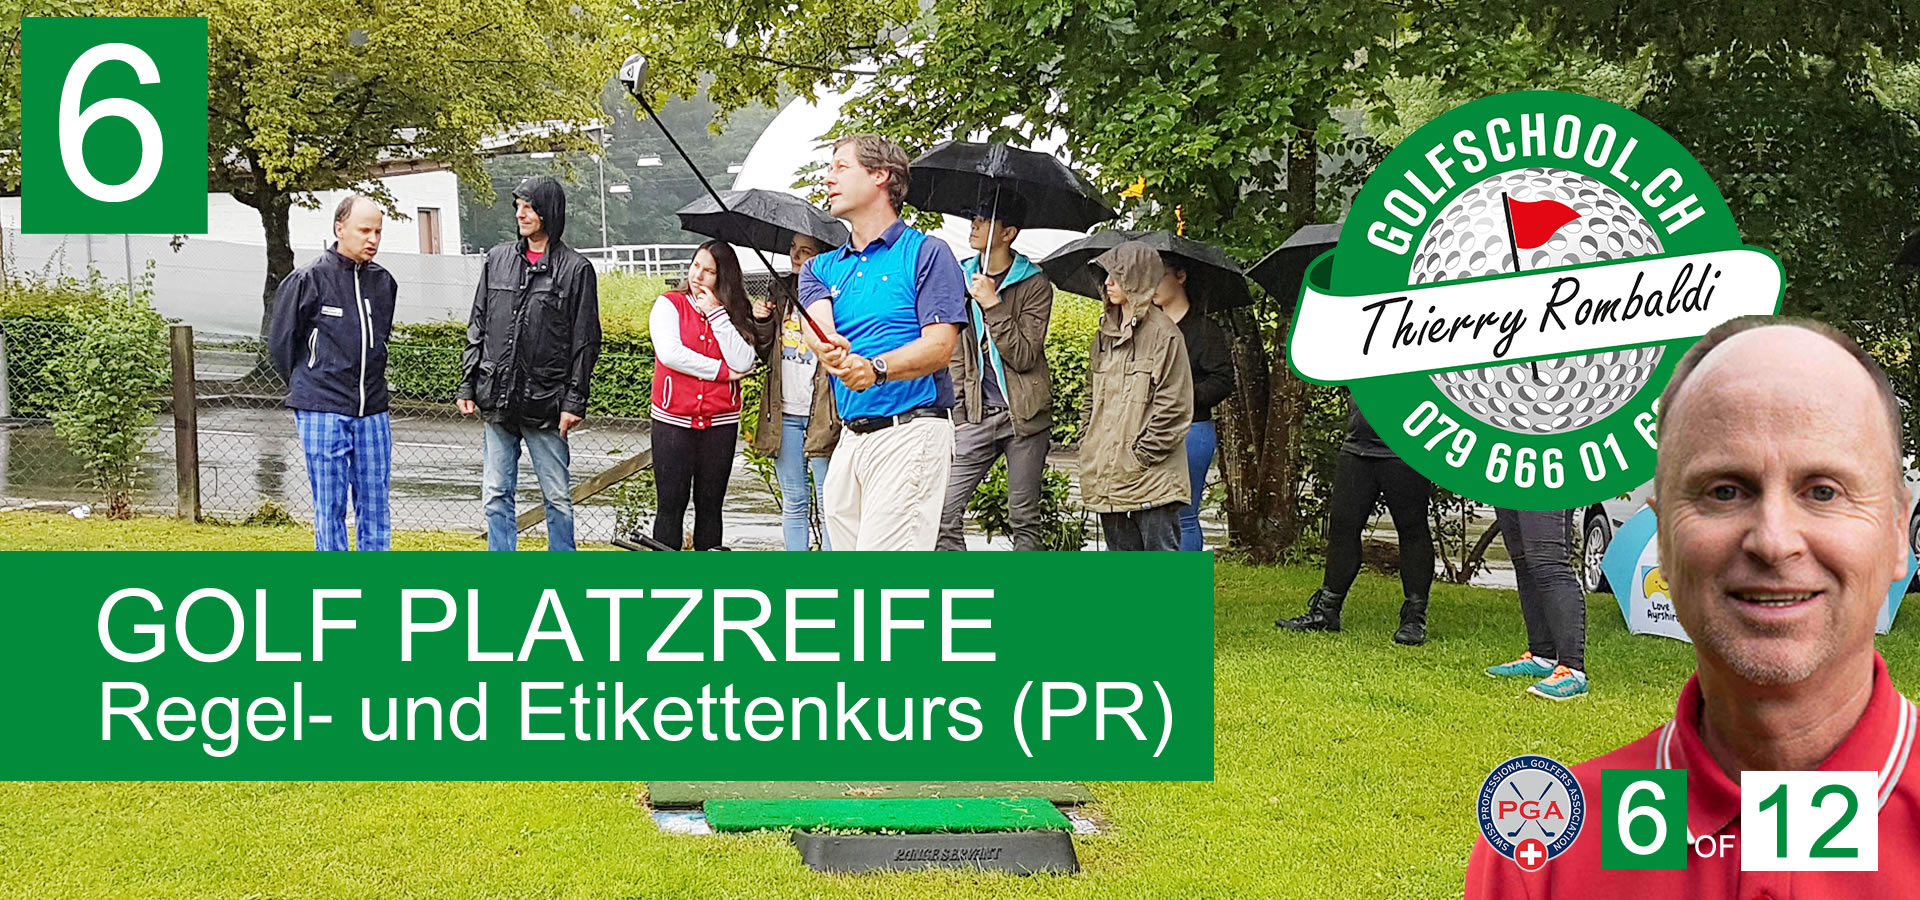 06-Golf-Platzreife-PR-Golf-Platzerlaubnis-Ettikette-Kurs-Zuerich-Schweiz-Preise-Thierry-Rombaldi